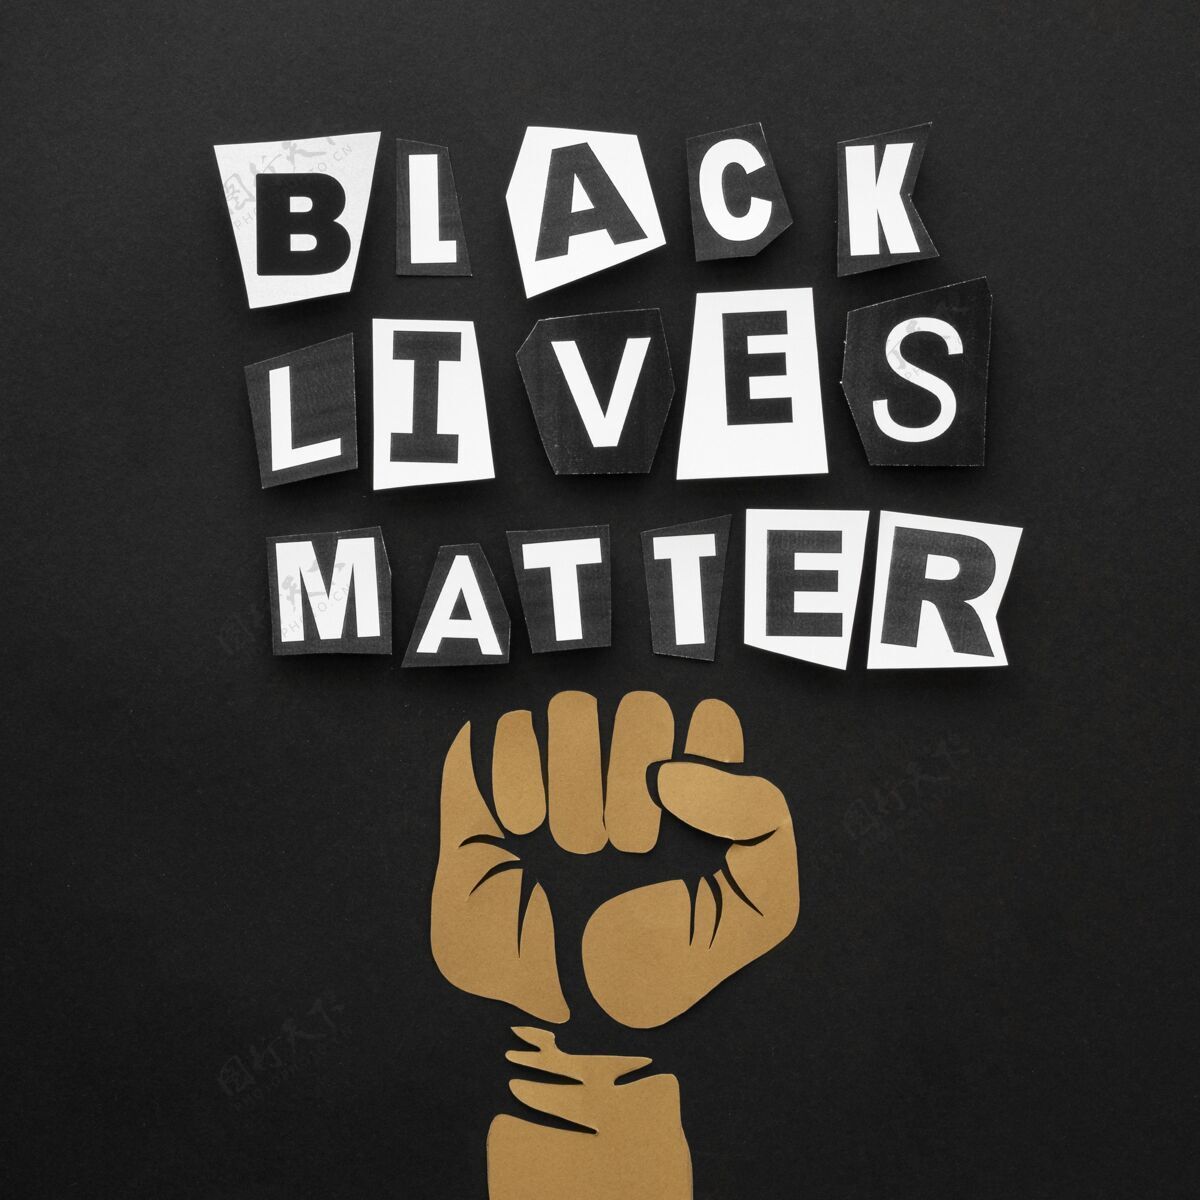 种族主义顶视图黑生命物质运动黑人生命的问题黑人权力社区